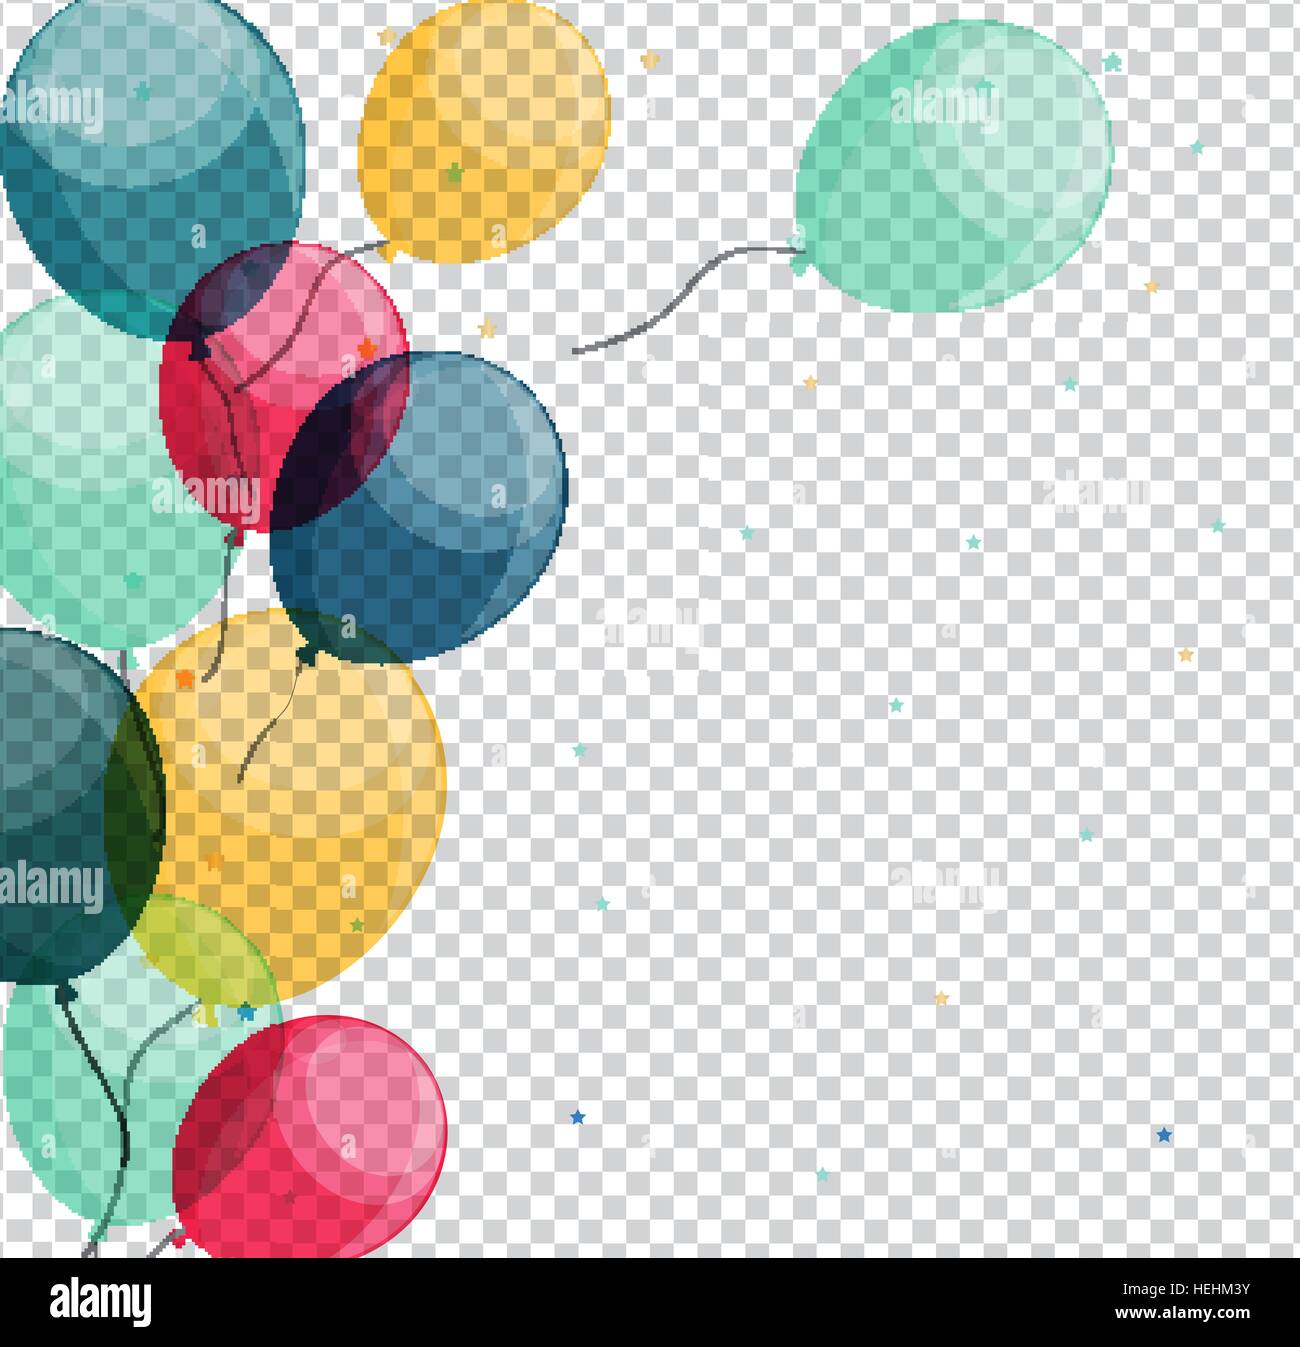 Ballons Joyeux Anniversaire Brillant Sur Fond Transparent Vector Image Vectorielle Stock Alamy